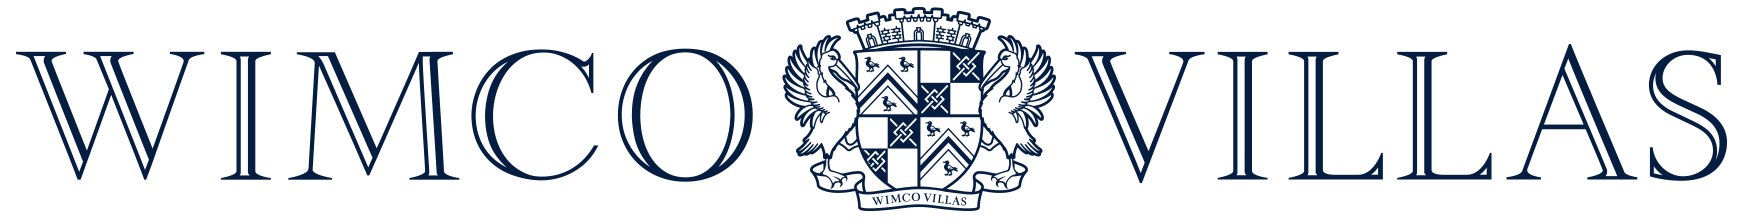 wimco-villas-logo-horizontal